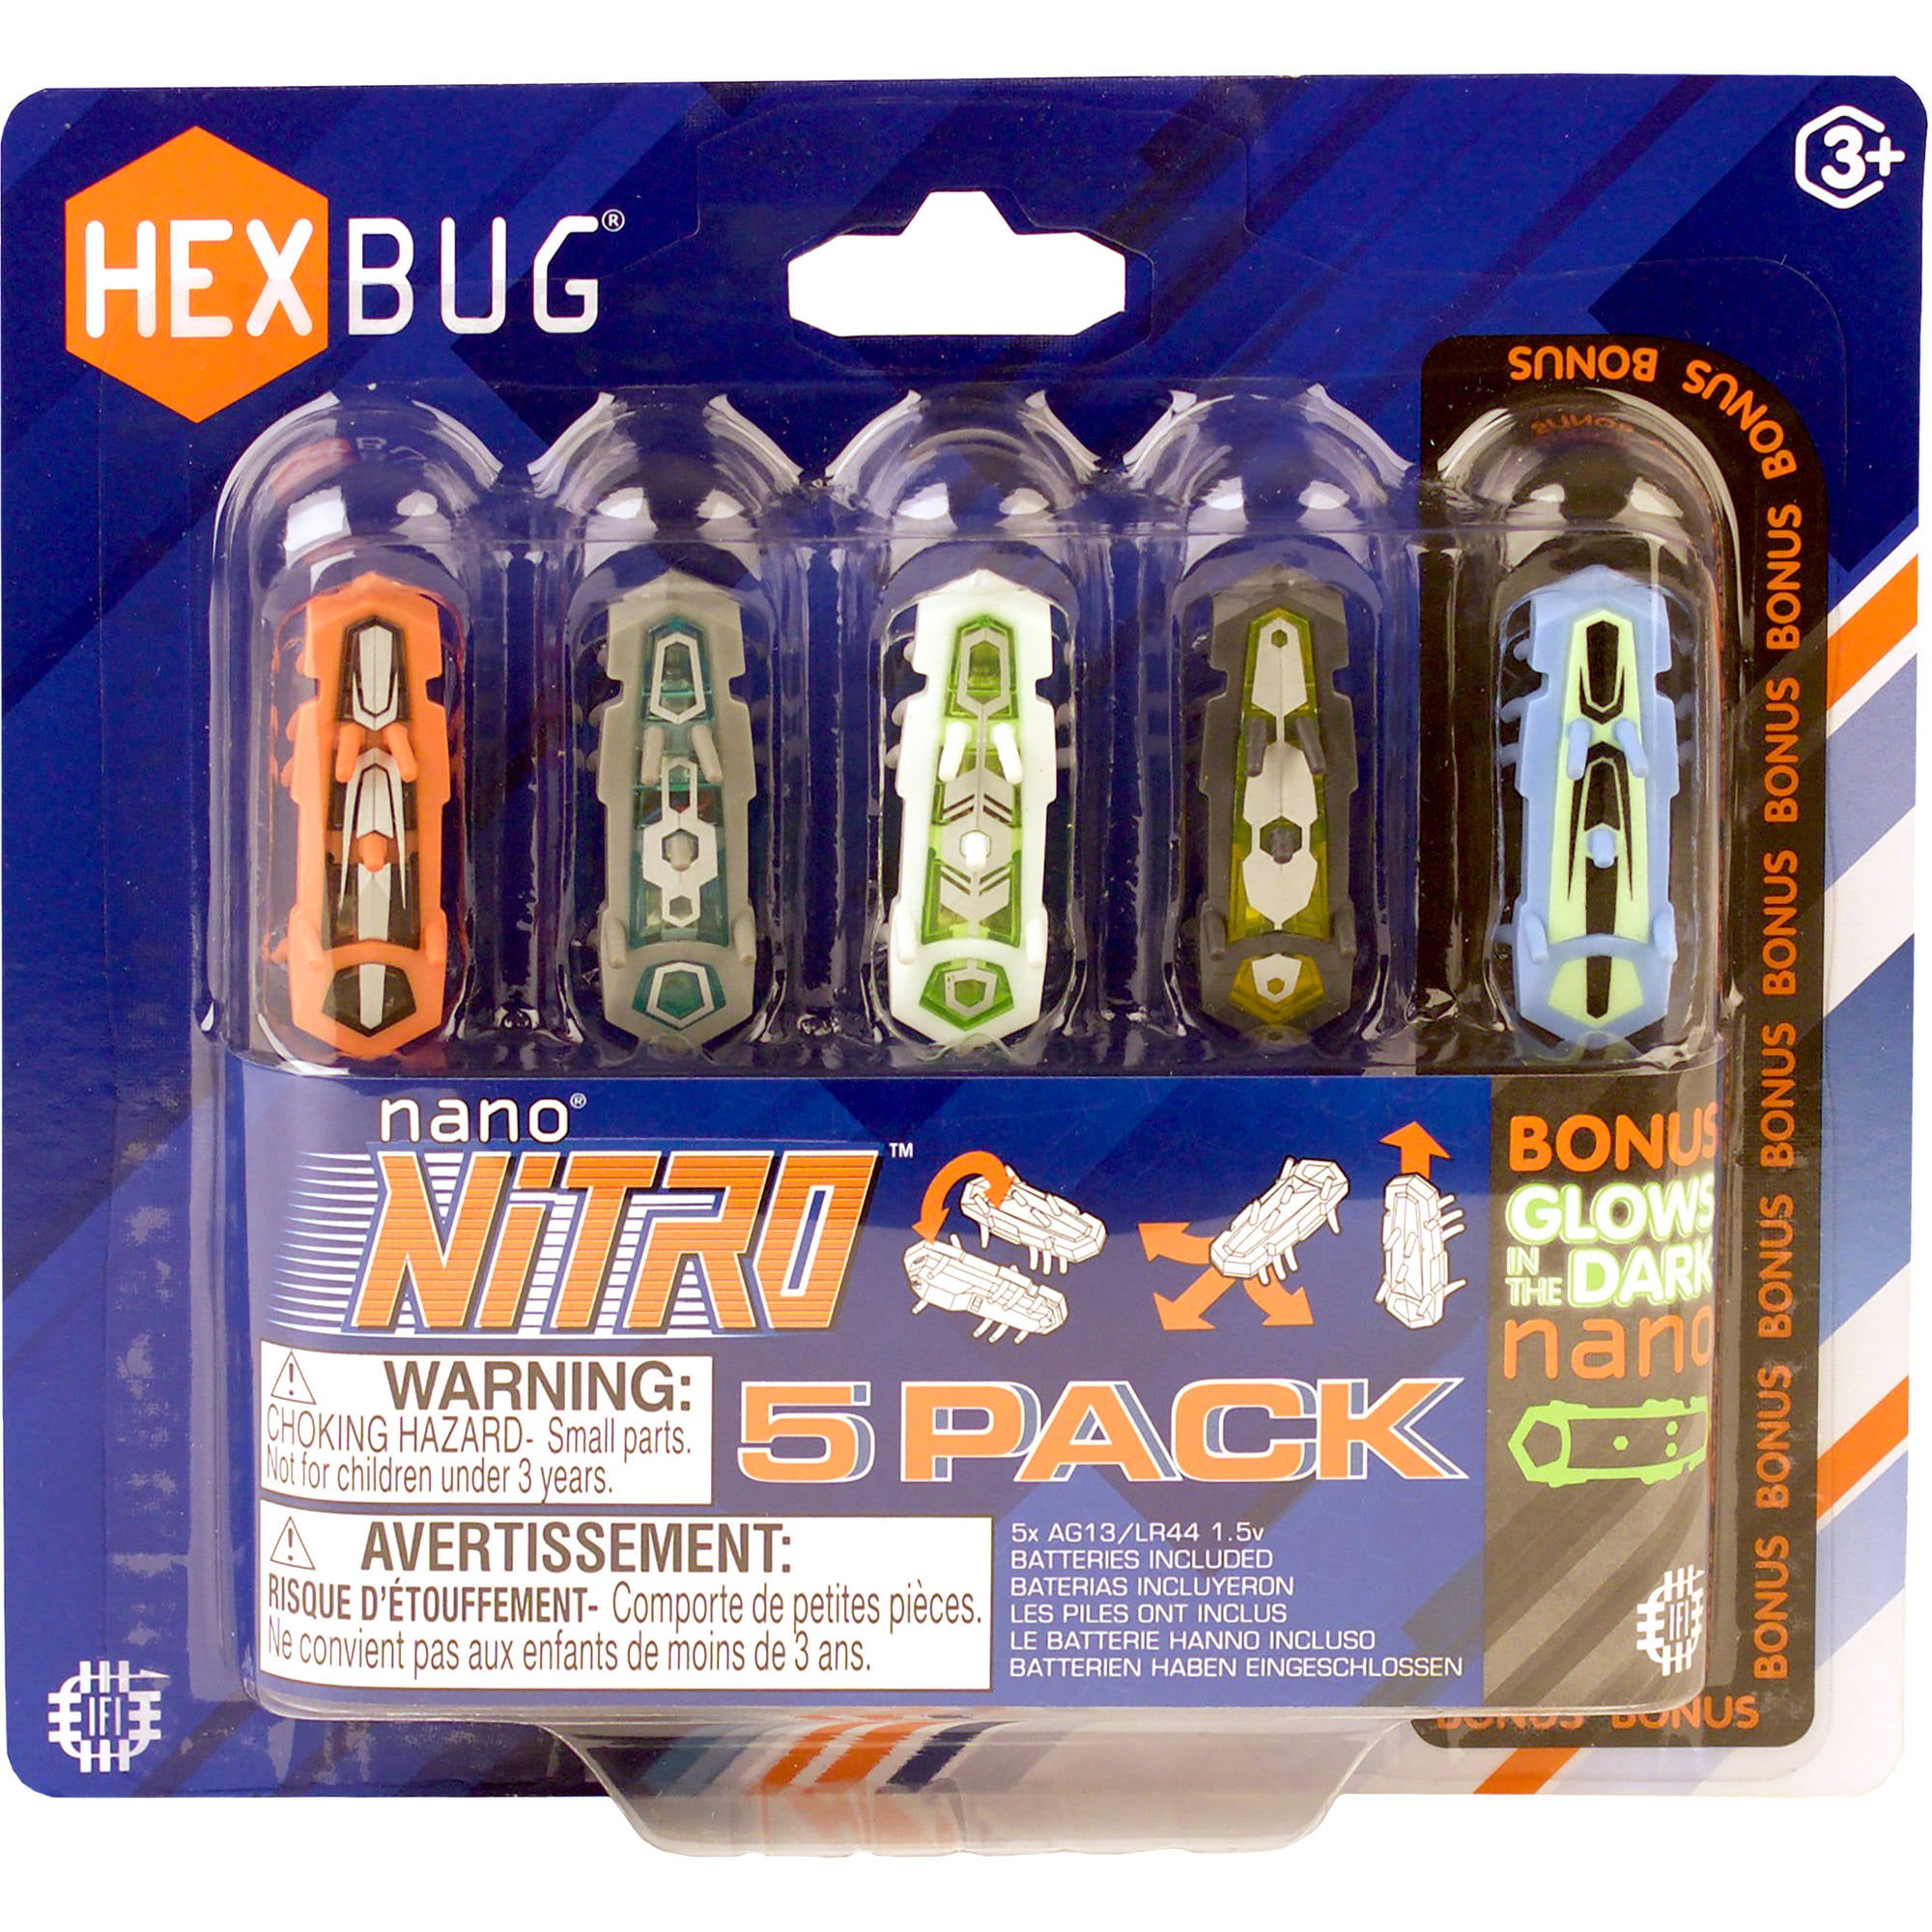 HEXBUG nano Nitro 5 Pack 